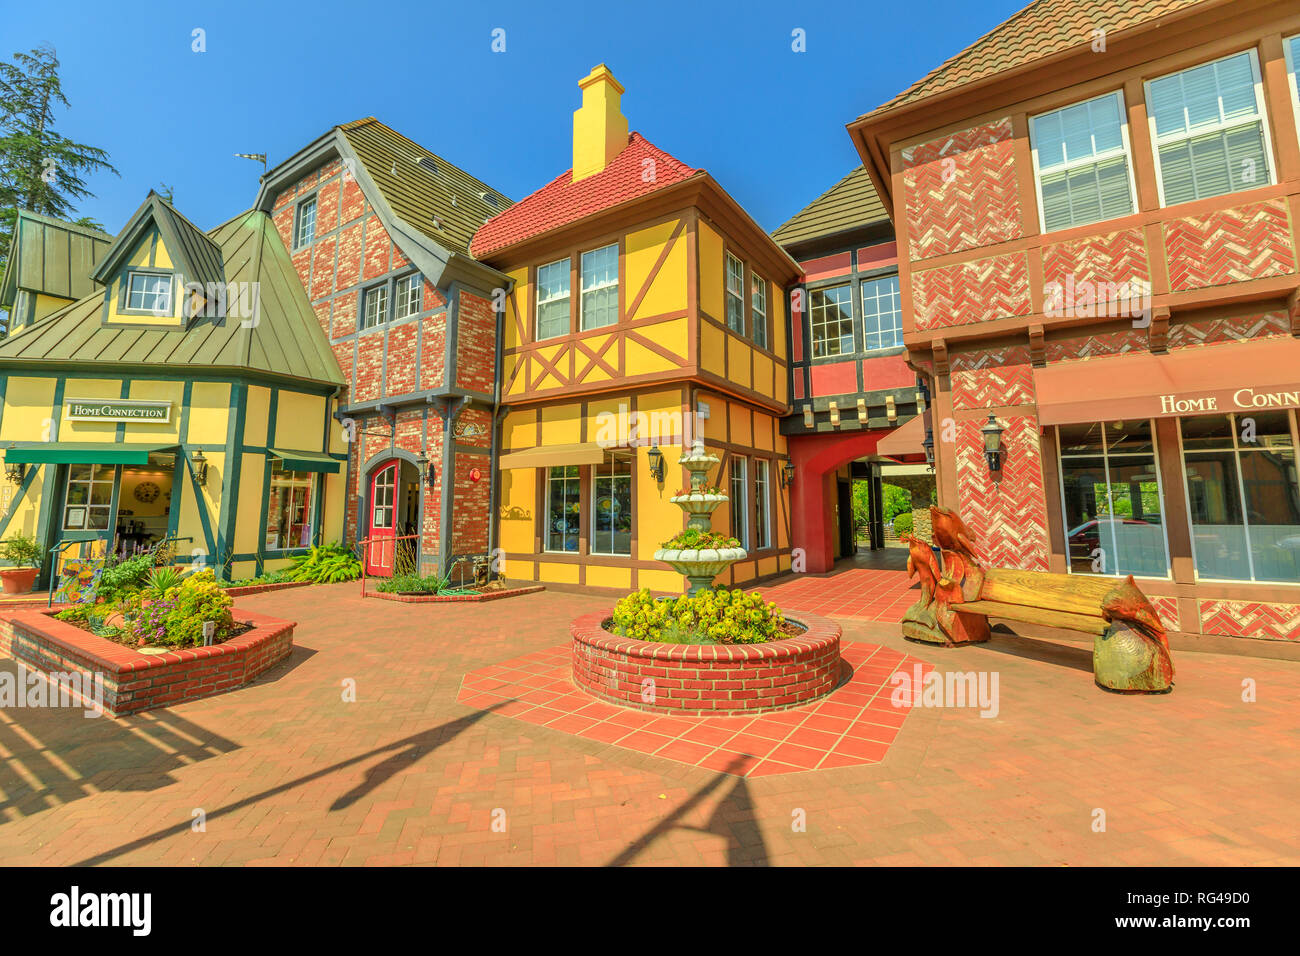 Solvang, Kalifornien, Vereinigte Staaten - 10 August 2018: farbenfrohe Gebäude im traditionellen dänischen Dorf Solvang berühmt für europäische Architektur Stockfoto